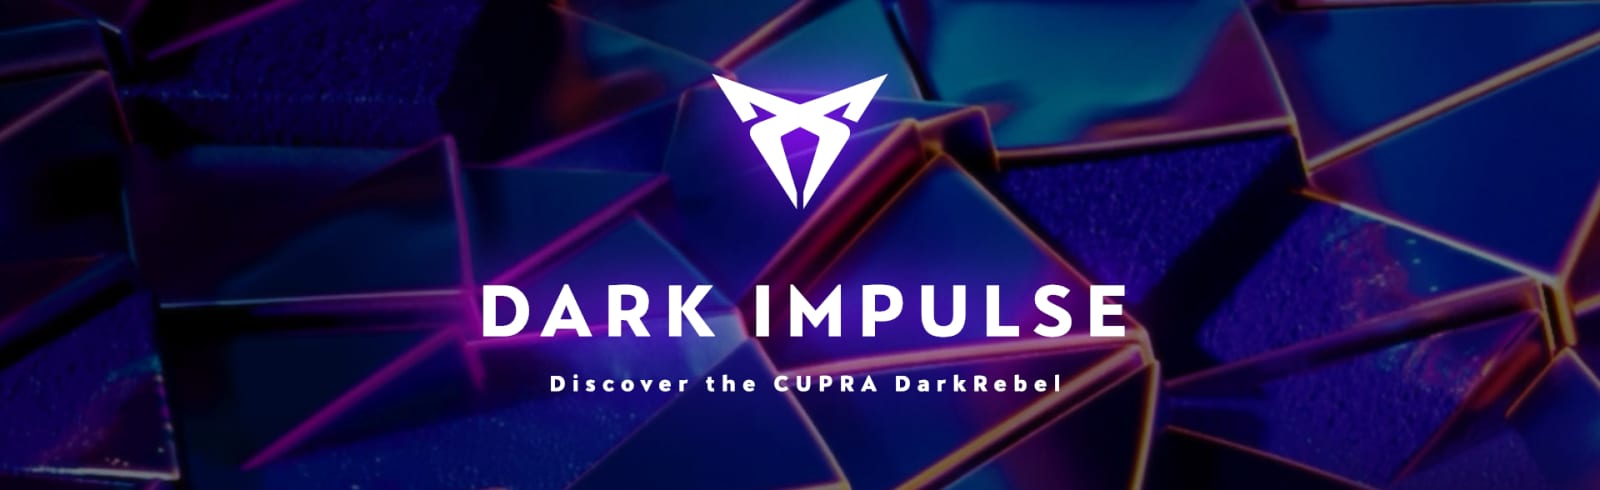 Światowa premiera modelu CUPRA DarkRebel. Zaproszenie na transmisję na żywo z targów IAA w Monachium